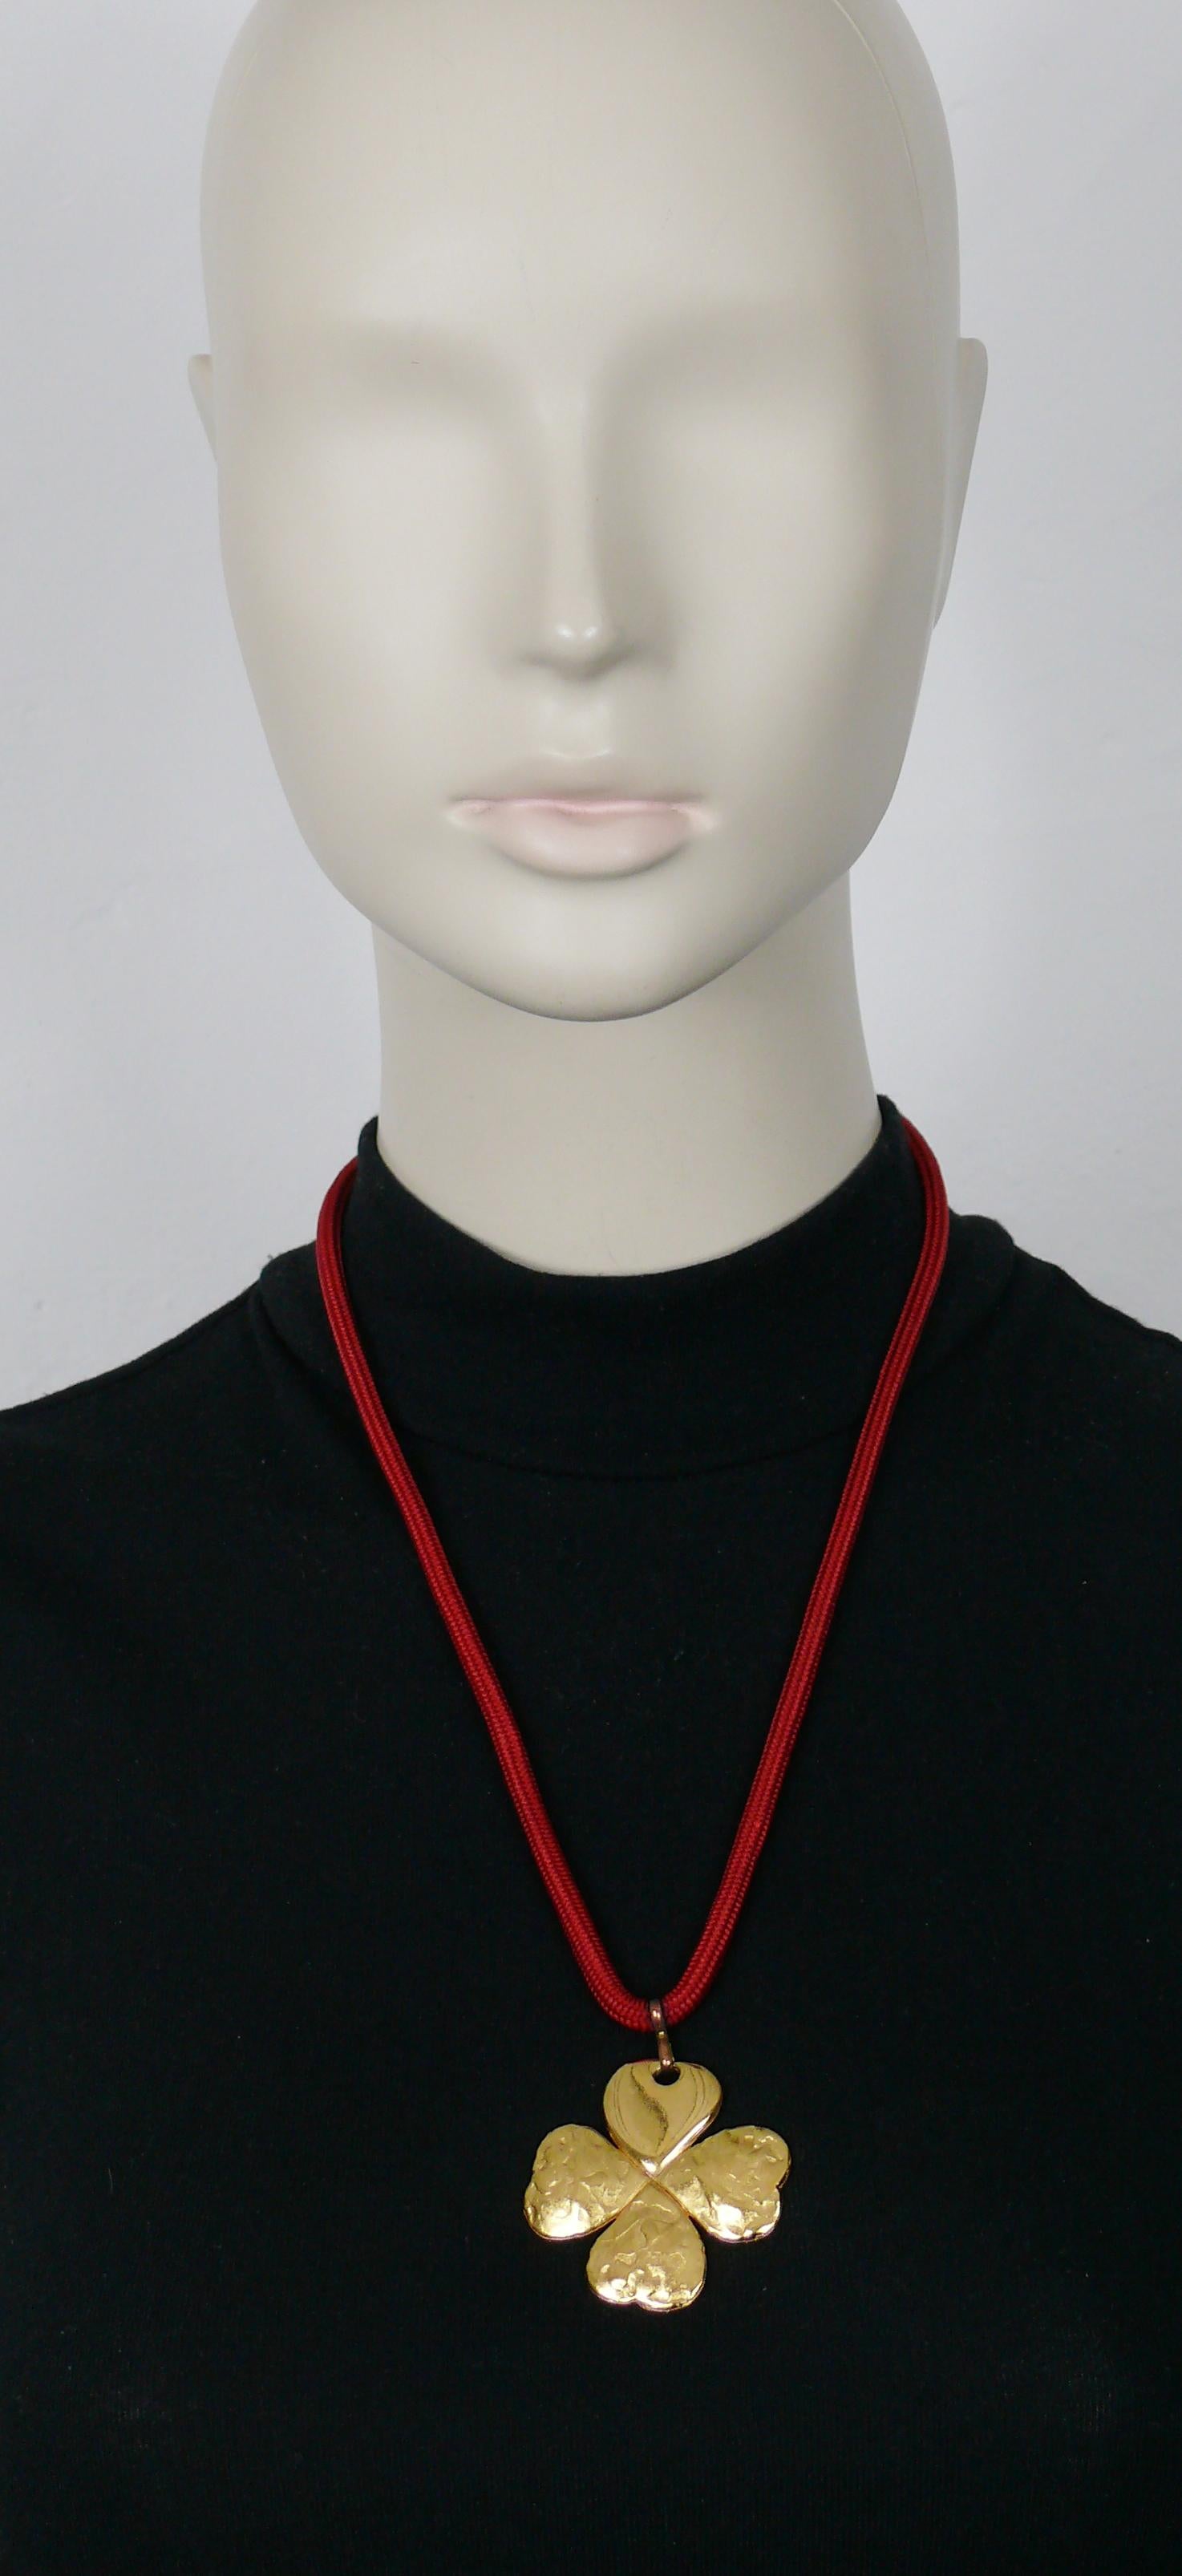 YVES SAINT LAURENT Vintage-Halskette mit vierblättrigem Kleeblatt-Anhänger in Goldton.

Rotes Seil.

Wird aufgesteckt (kein Verschlusssystem).
Einstellbare Länge (Schiebeherz).

Geprägtes YSL Made in France.
Auf dem verschiebbaren Herz ist die